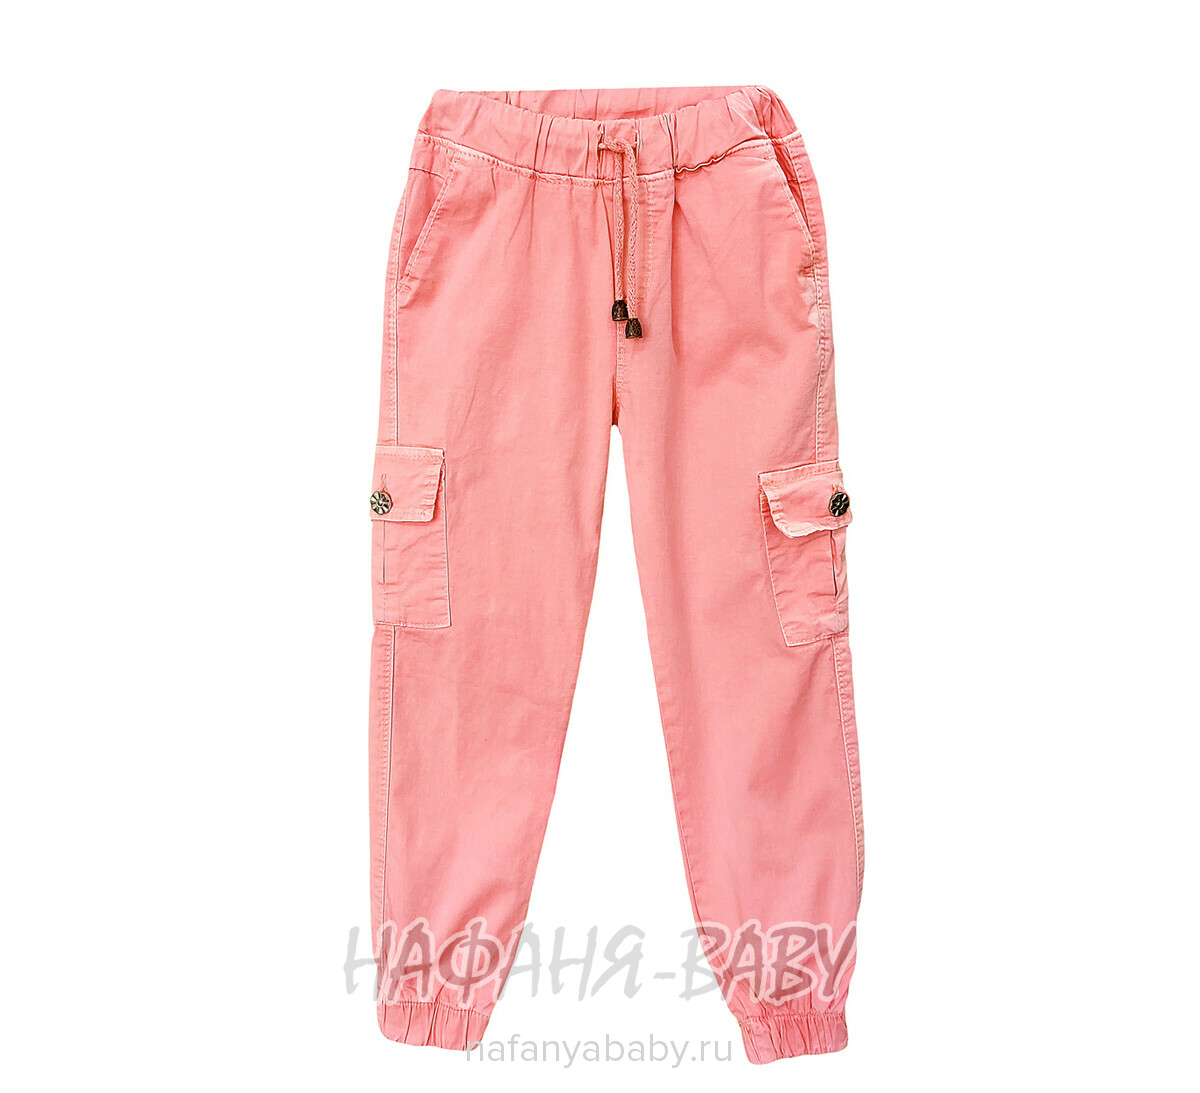 Детские летние брюки TATI Jeans арт: 6487 3-7 лет, цвет персиковый, оптом Турция